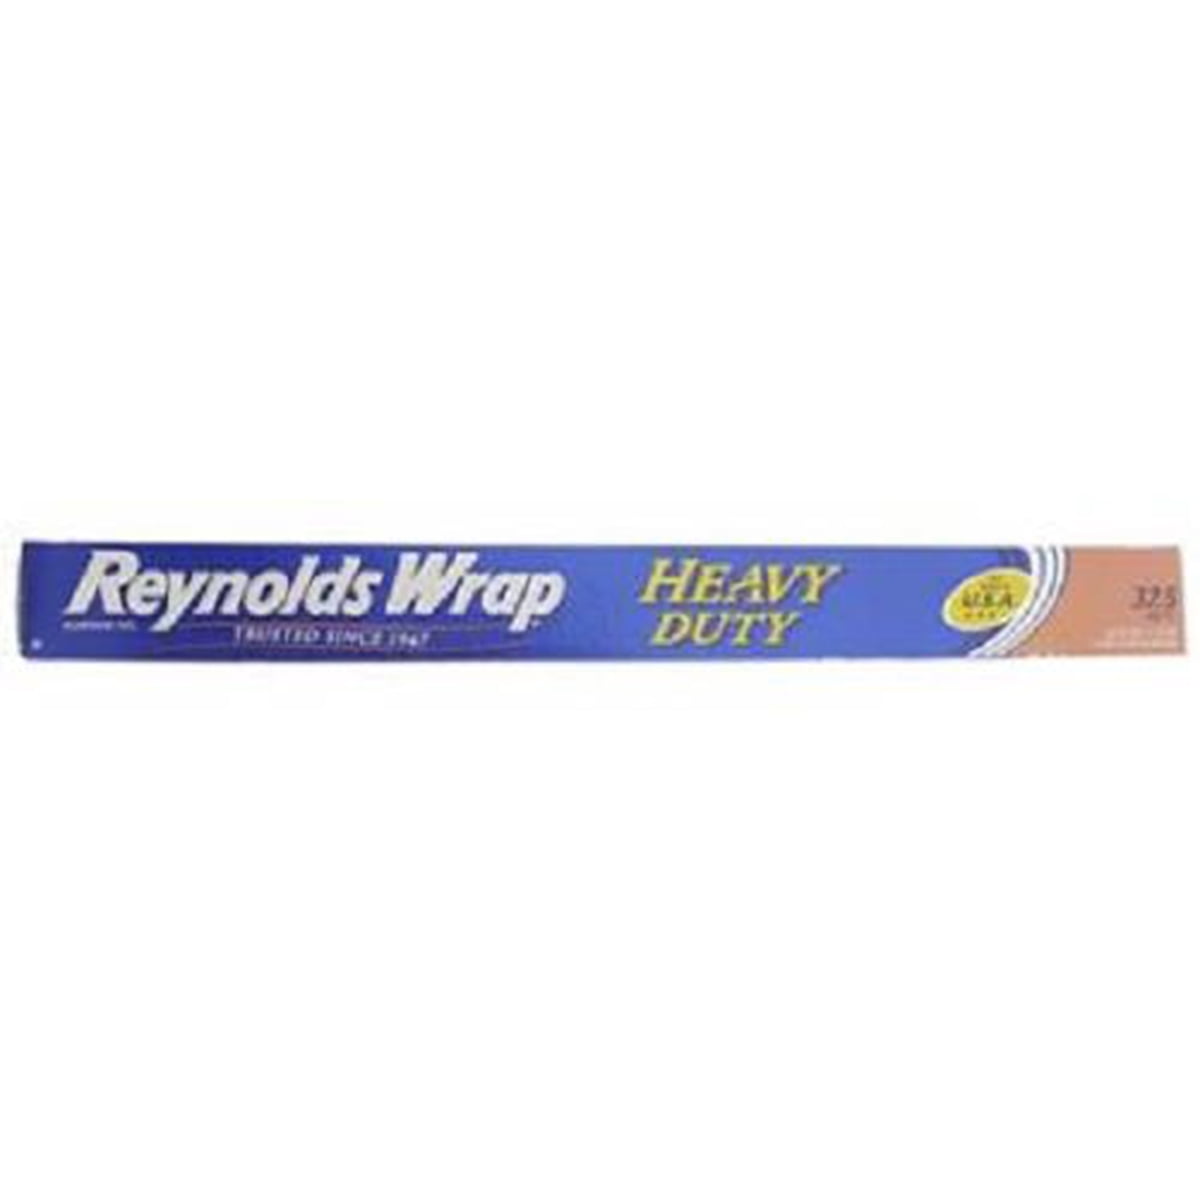 HEAVY DUTY Details about   Reynolds Wrap 18" Aluminum Foil 150 sq ft x 2 300 sq. ft. Total 